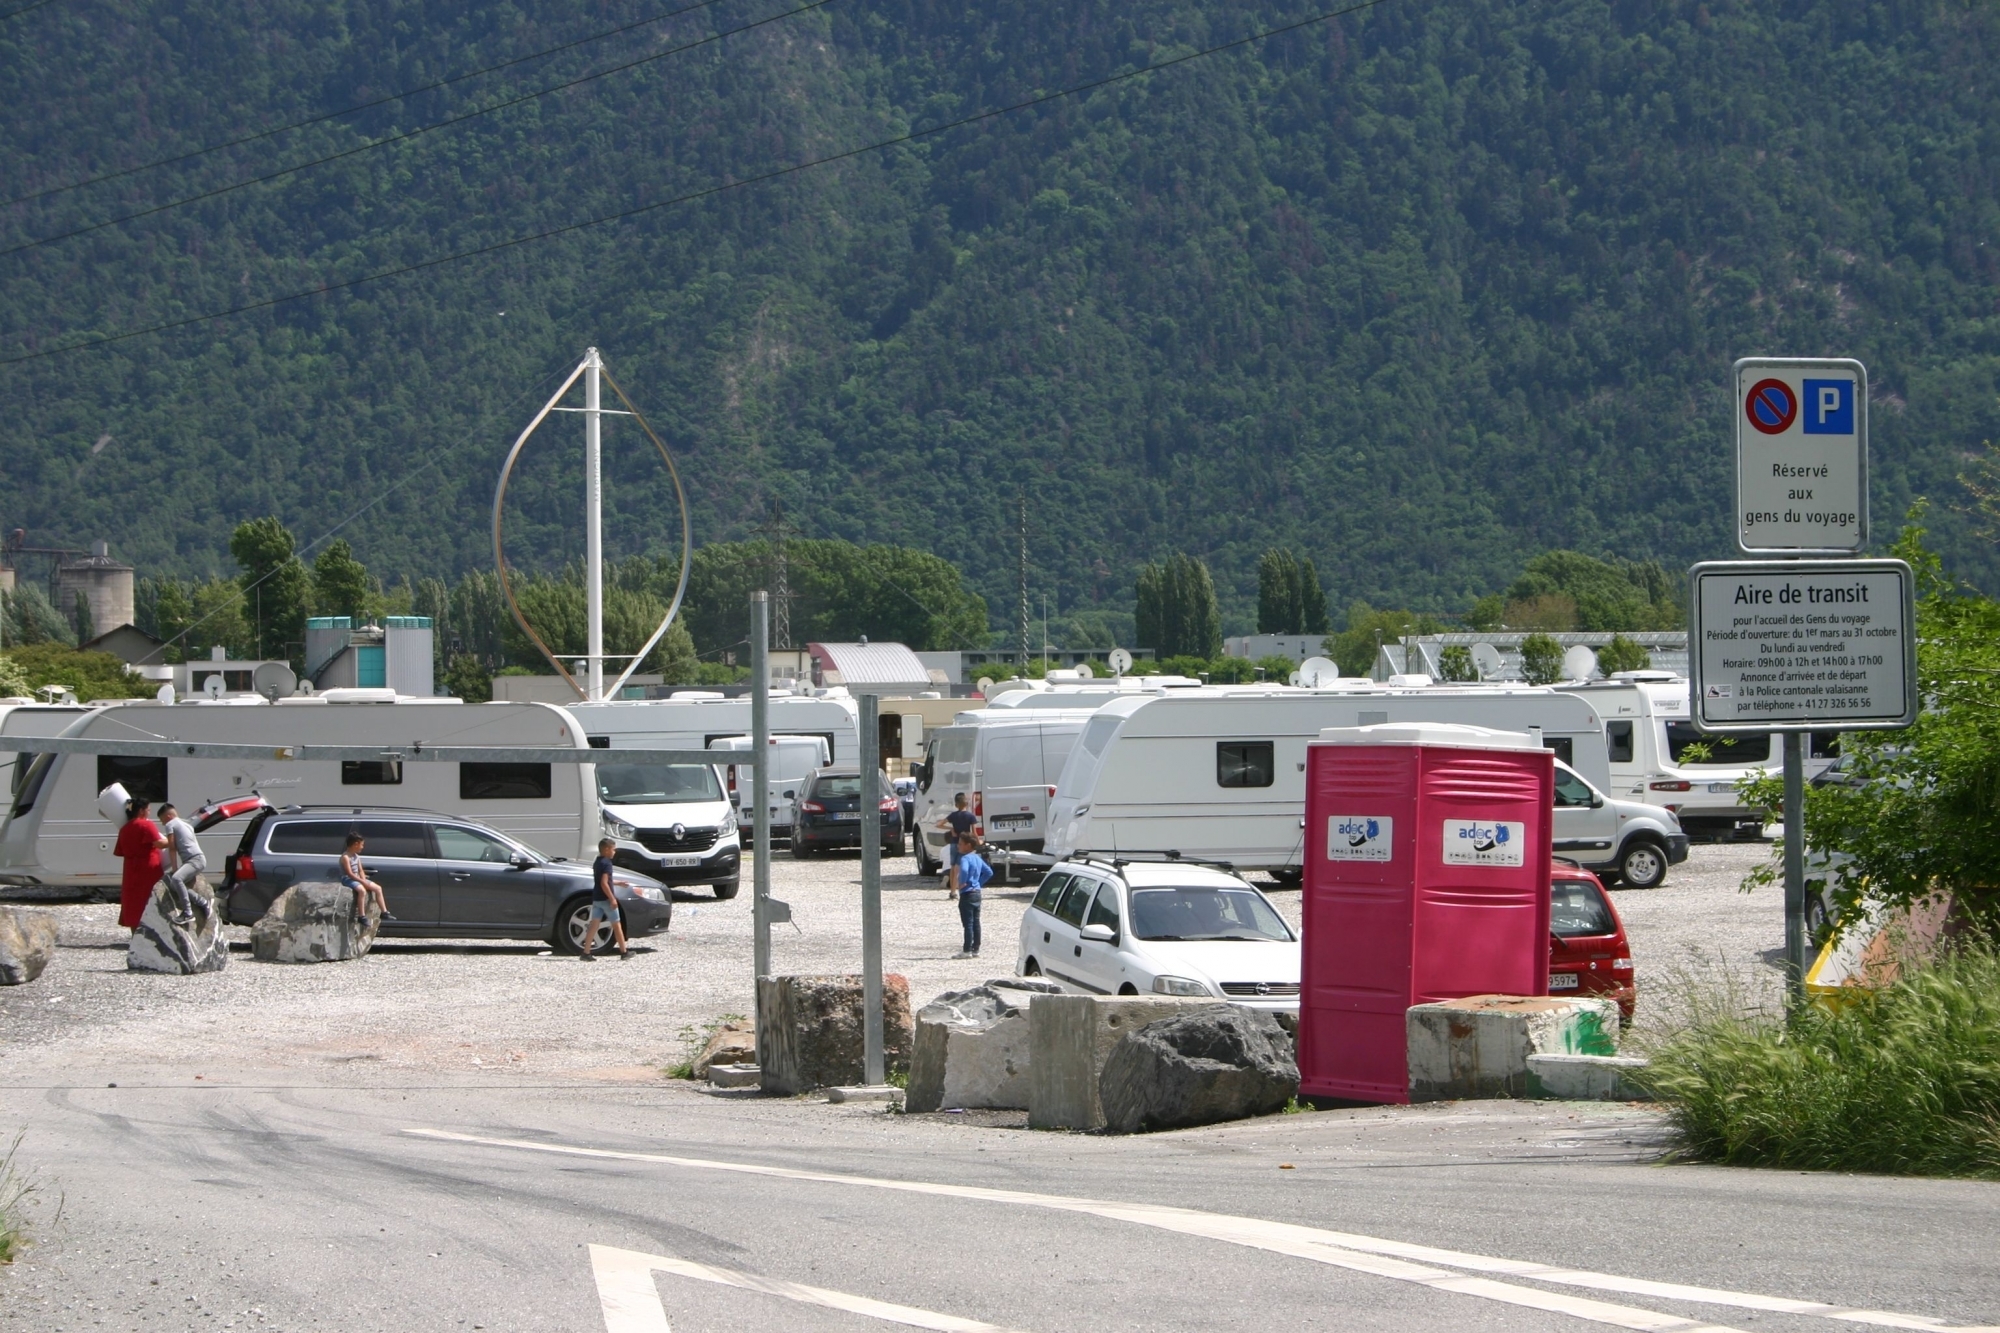 Le convoi entré mercredi en Suisse s'est installé à Martigny, sur l'aire de transit réservée aux gens du voyage.